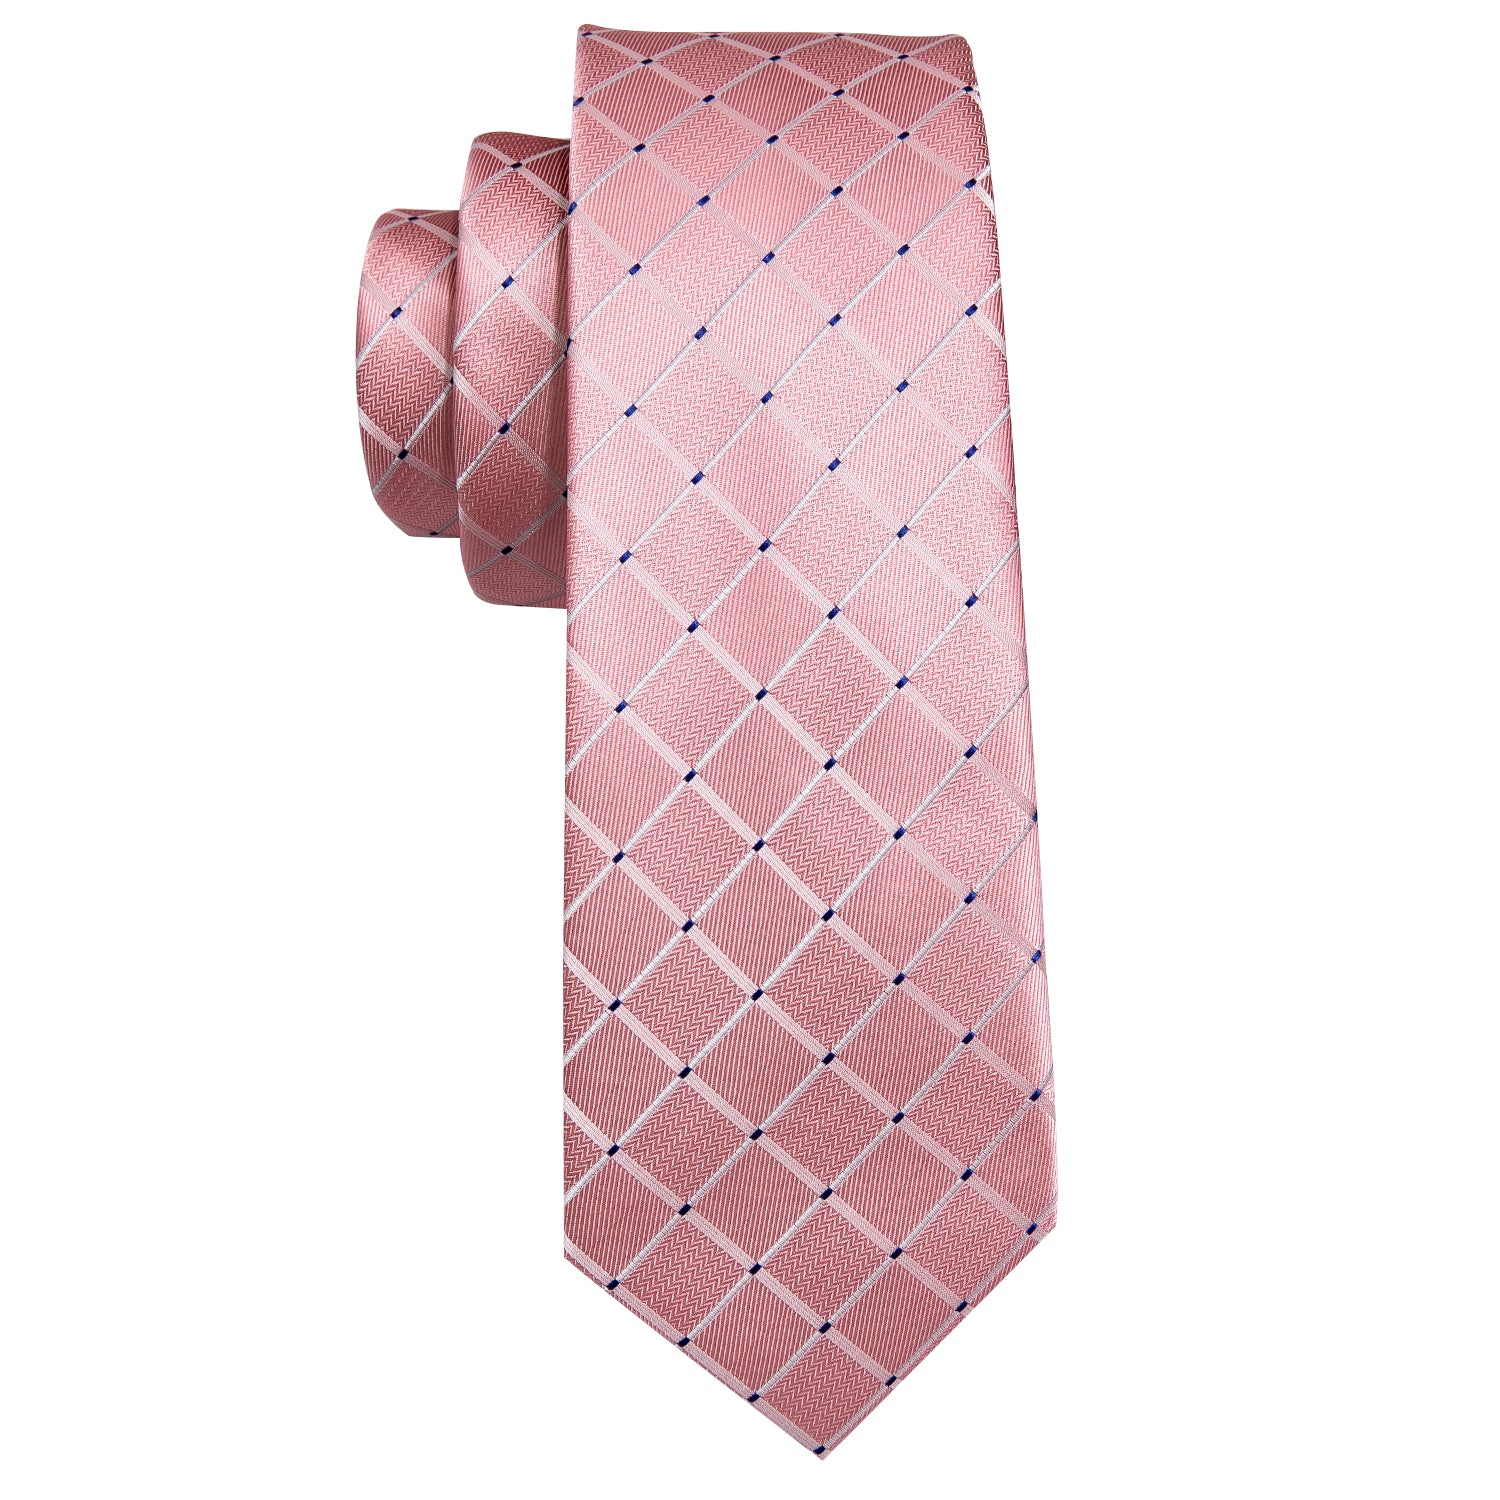 Fashion Pink Plaid Necktie Pocket Square Cufflinks Set